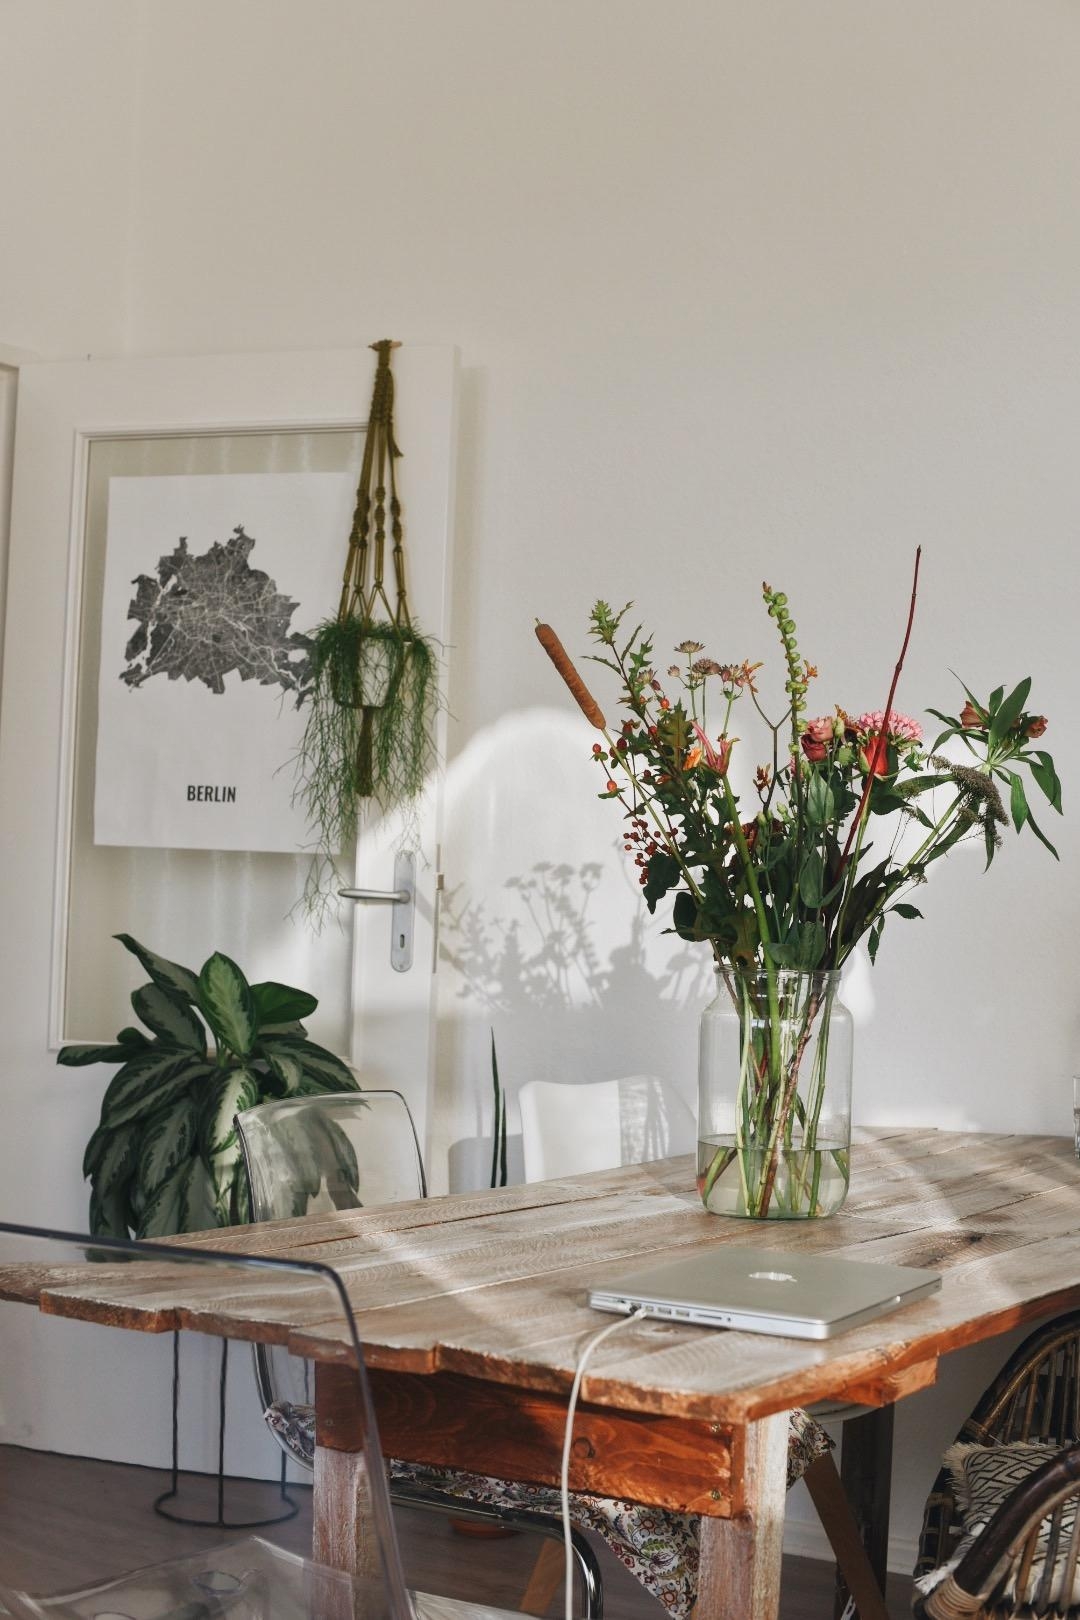 Blumen & morgendliches Licht #flowers #table #wohnzimmer #livingroom #esstisch